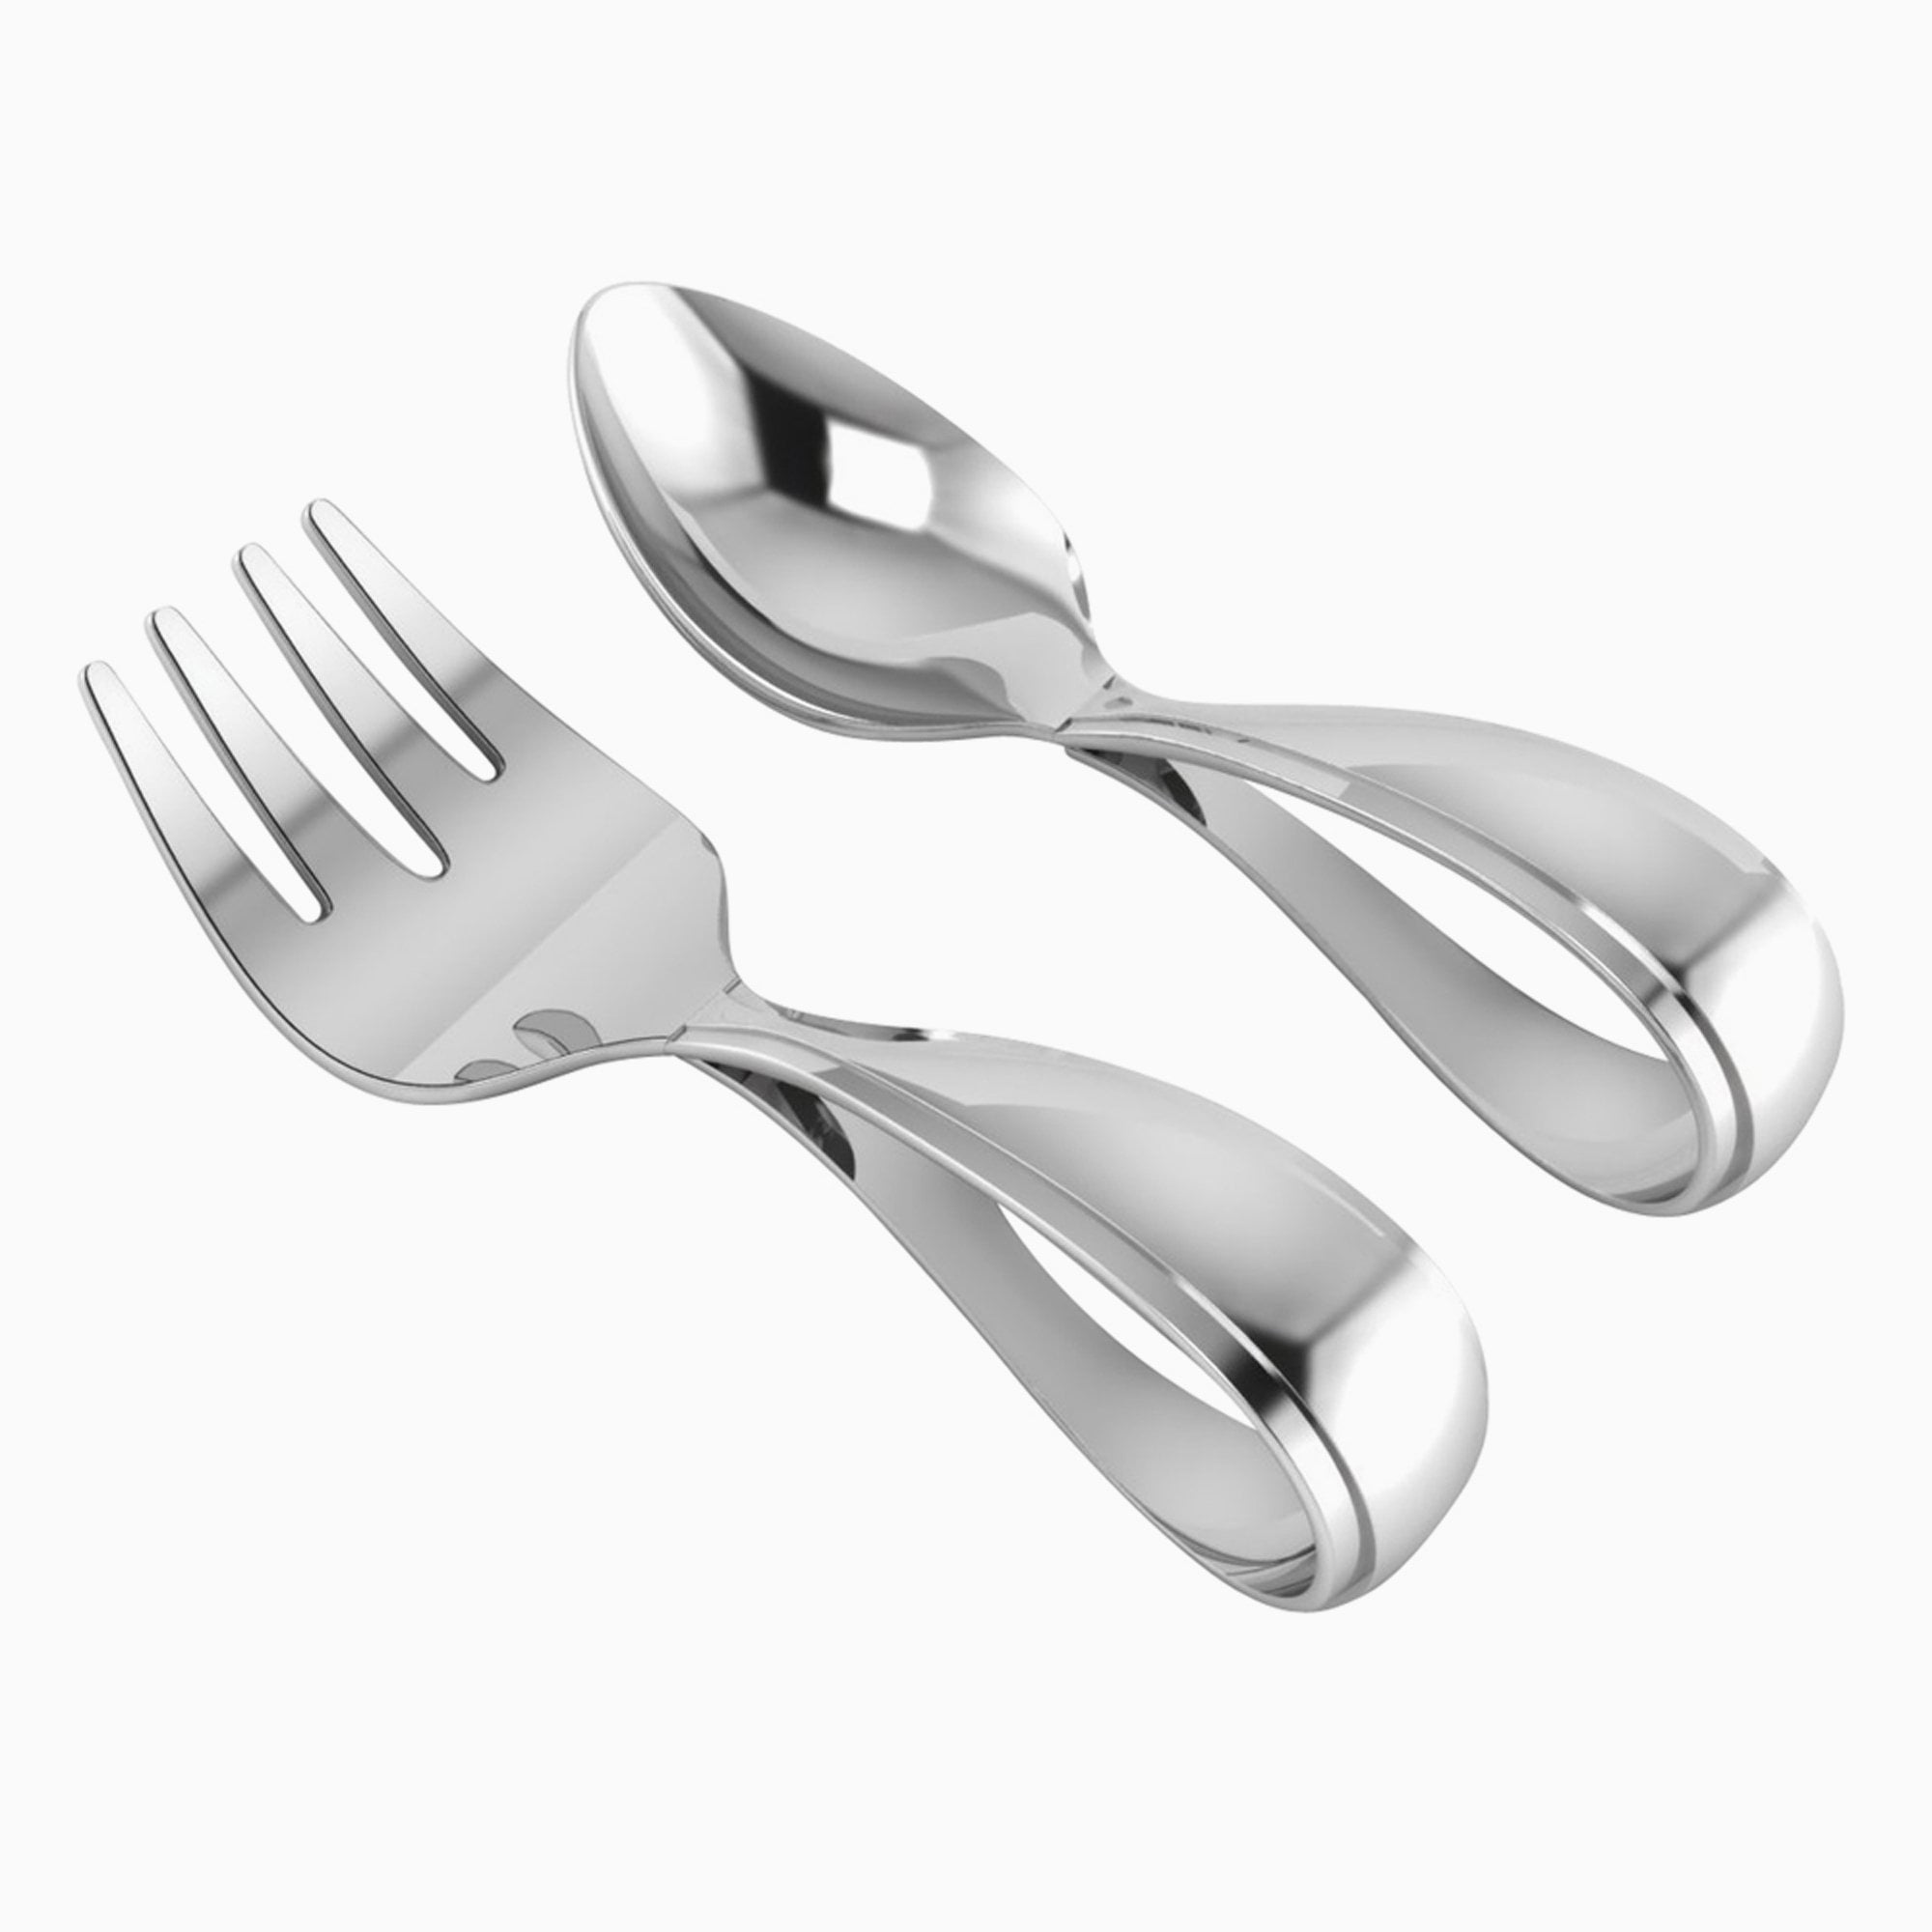 Sterling Silver Sweetheart Spoon & Fork Set by Krysaliis 